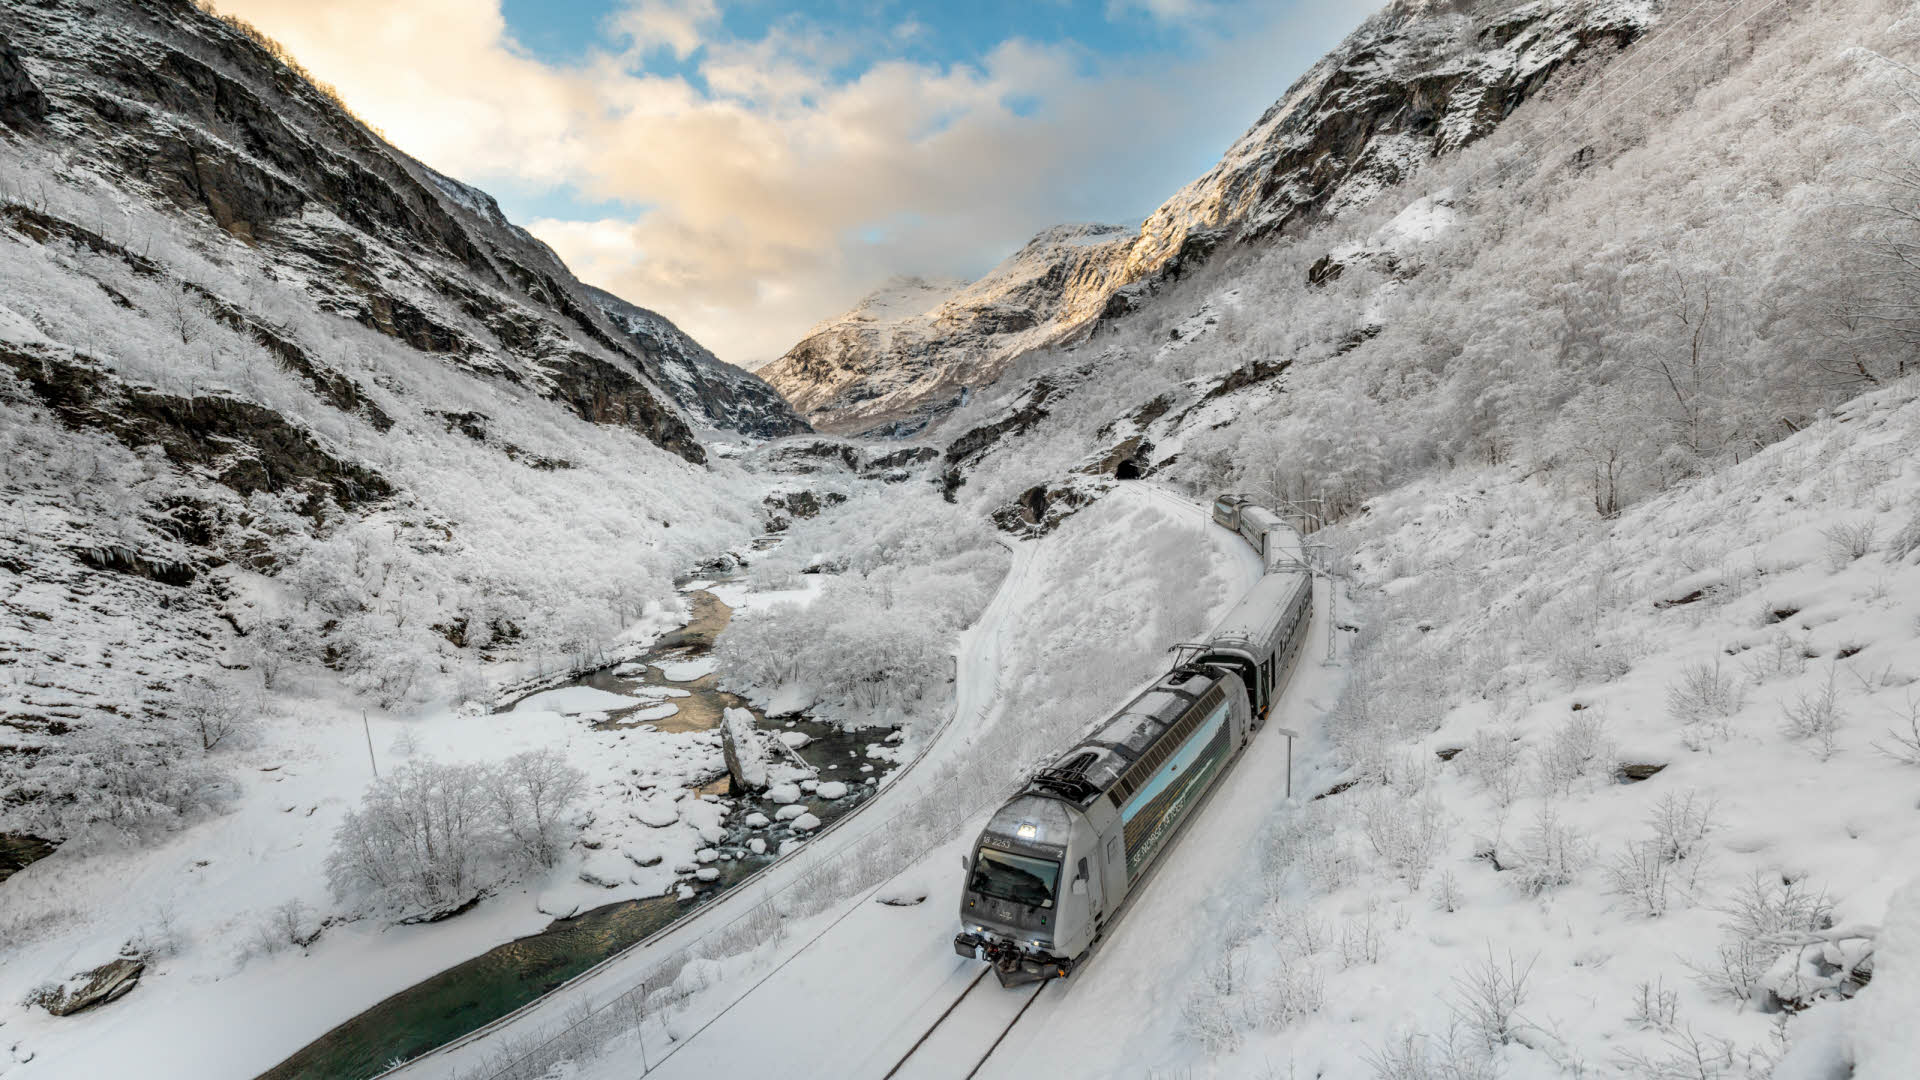 El ferrocarril de Flåm bajando por el valle de Flåm en invierno con las pistas y las montañas cubiertas de nieve.